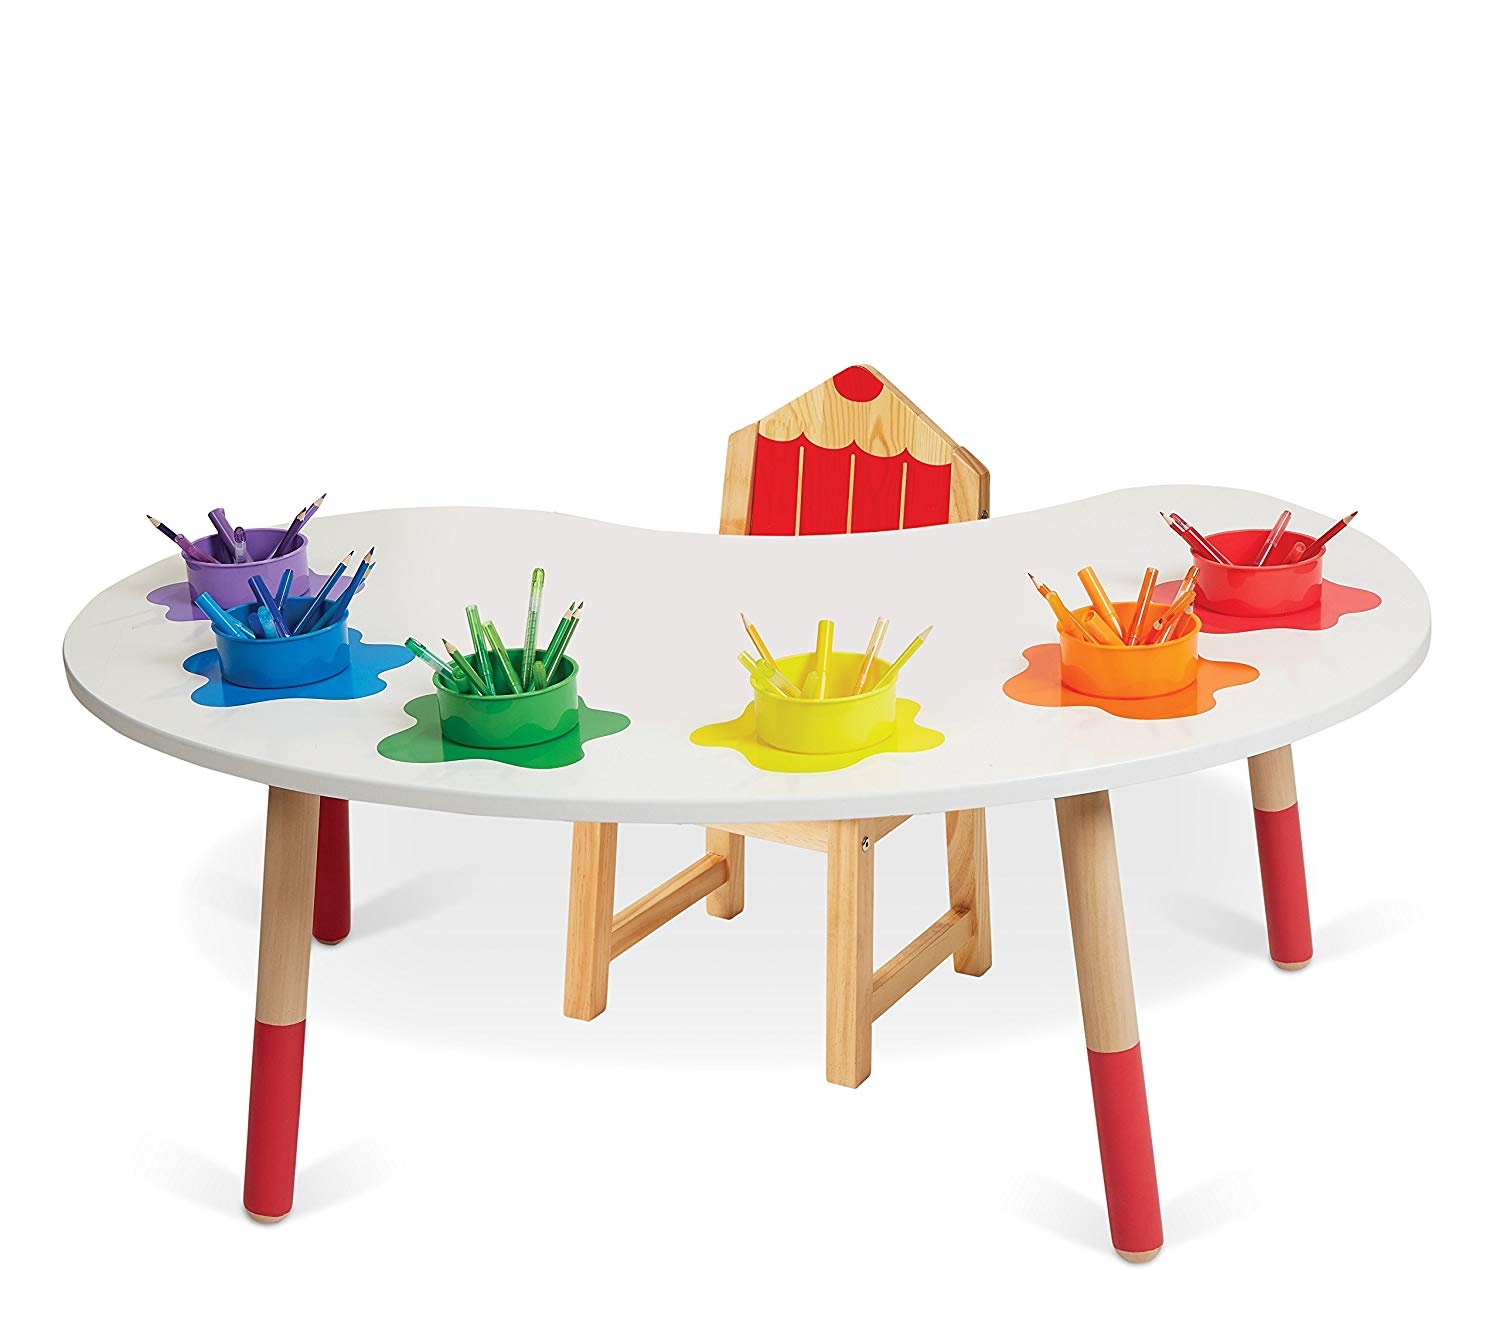 alex toys art table